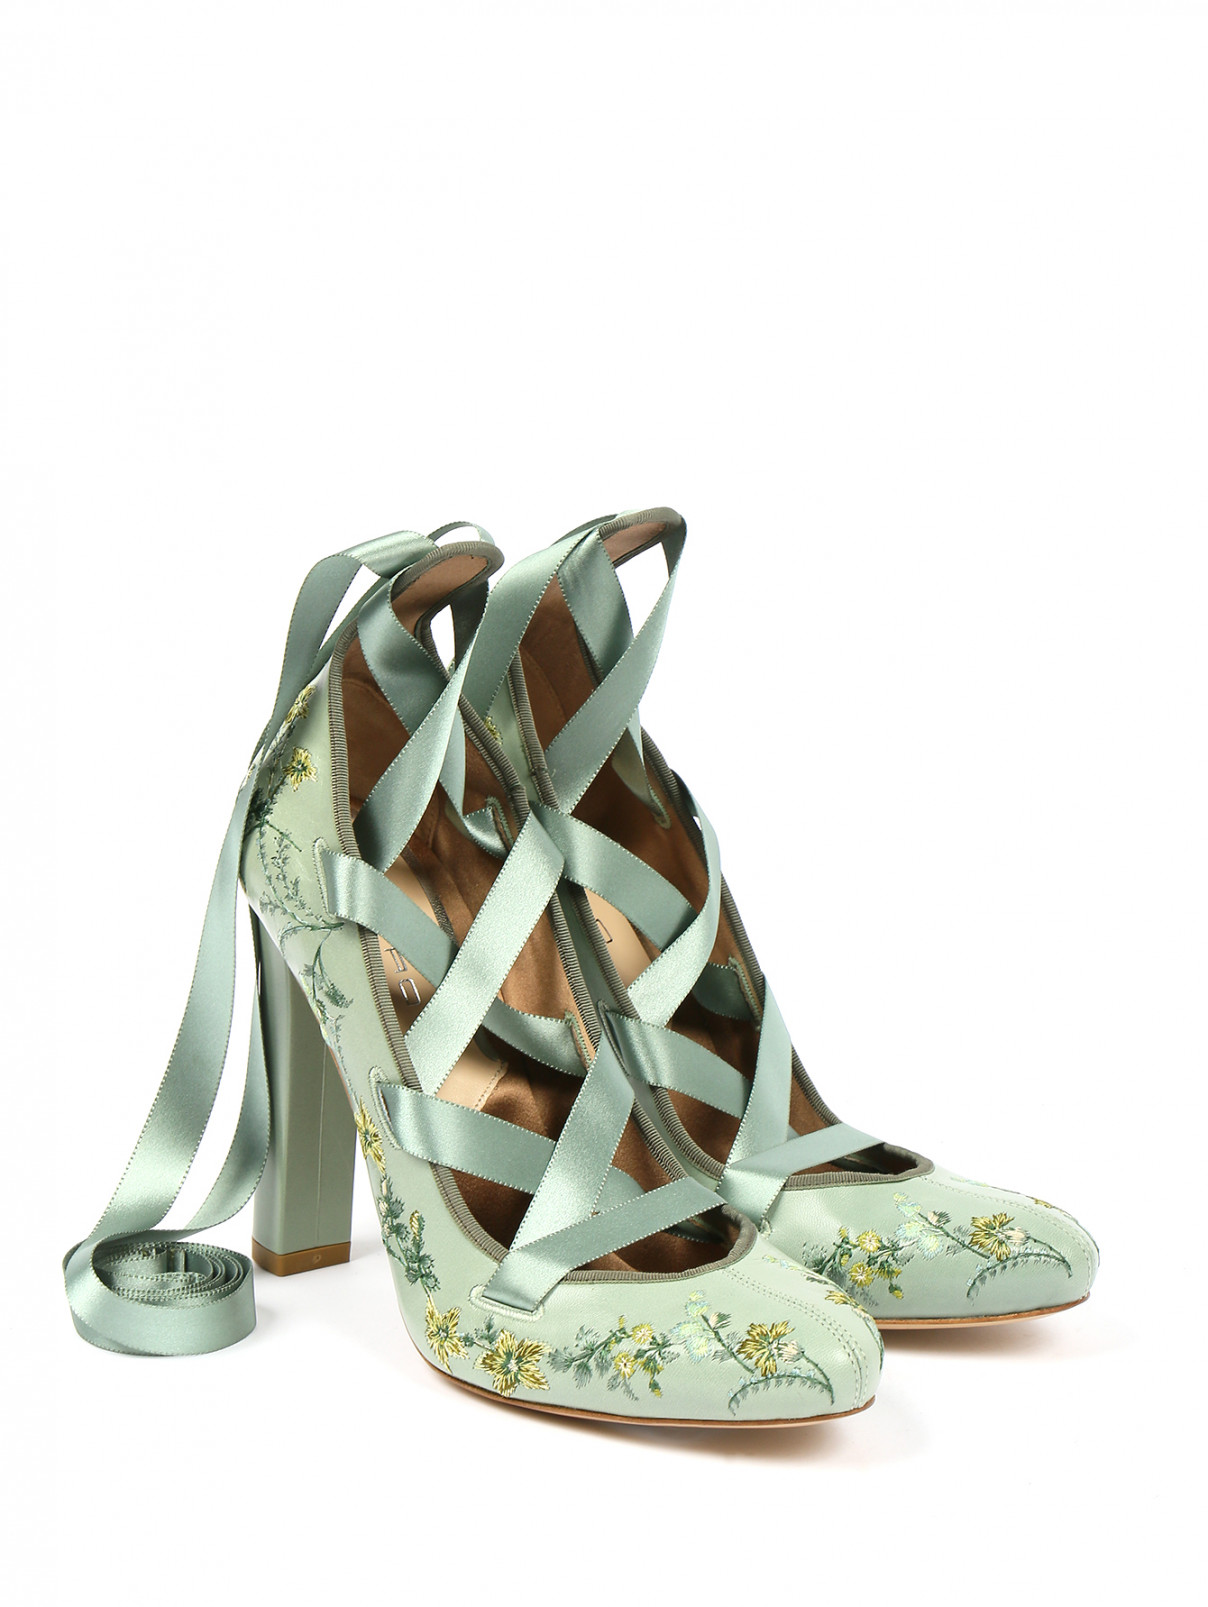 Туфли из кожи на высоком каблуке с вышивкой и шелковыми лентами Etro  –  Общий вид  – Цвет:  Зеленый